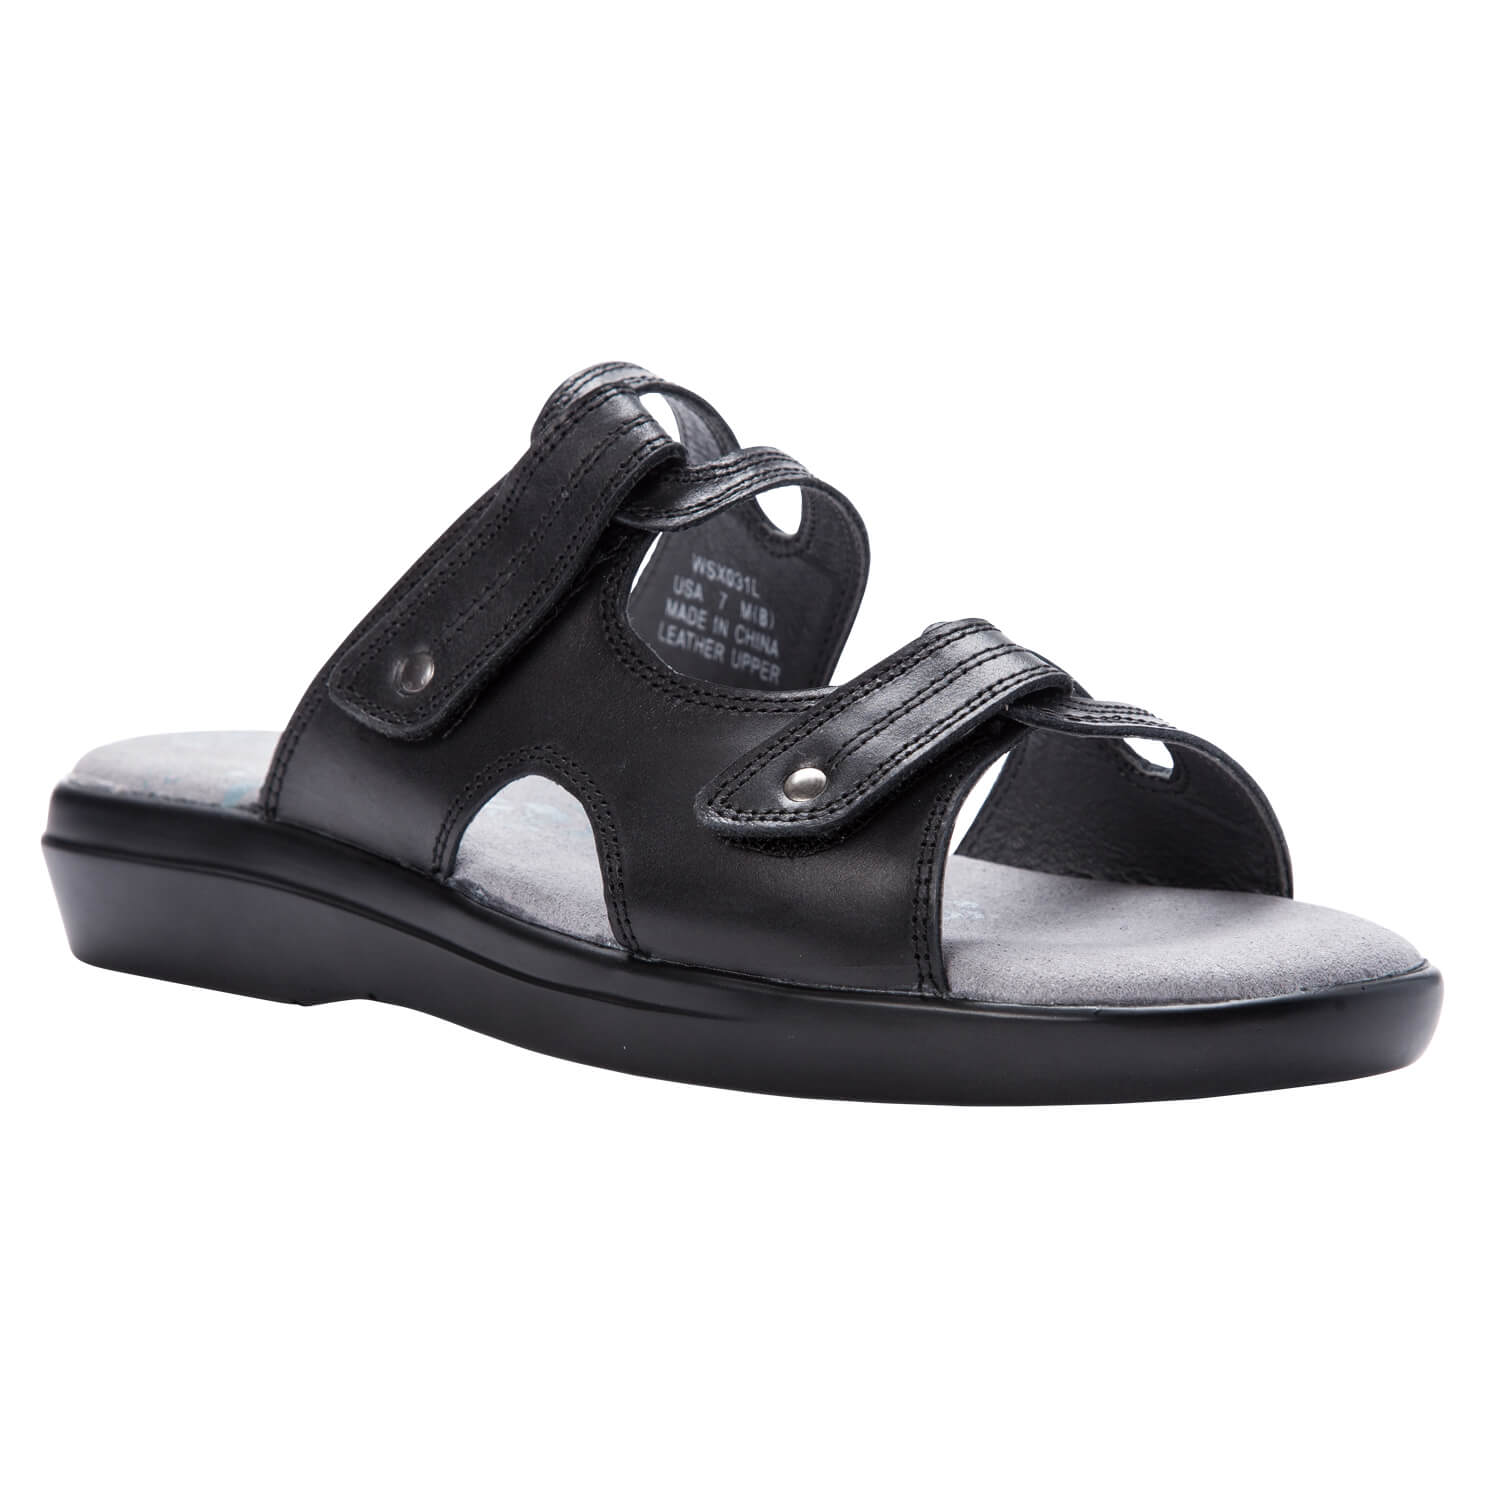 wide slide sandals